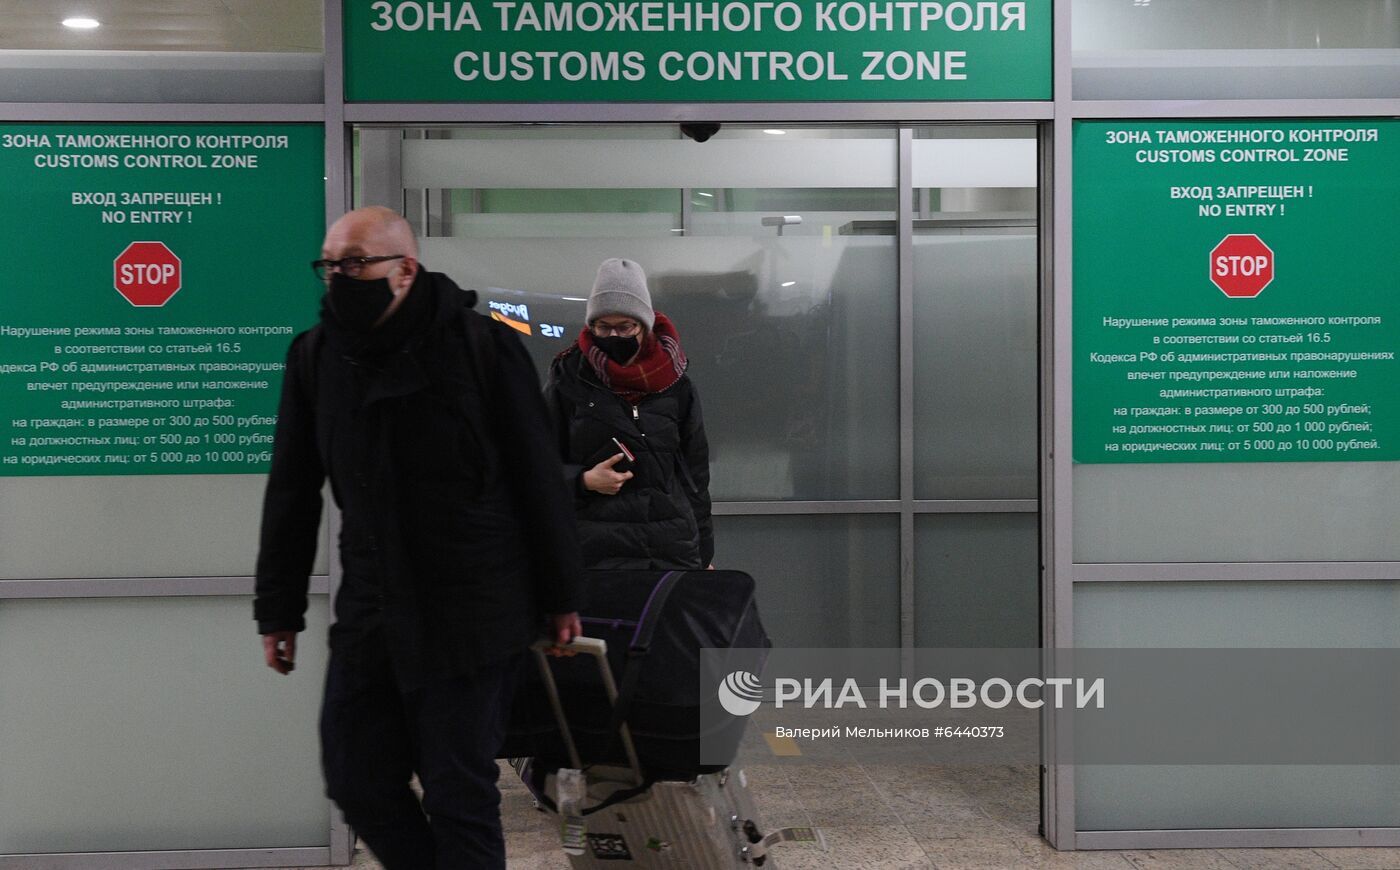 Аэропорт Шереметьево , куда приземлился самолёт с А. Навальным